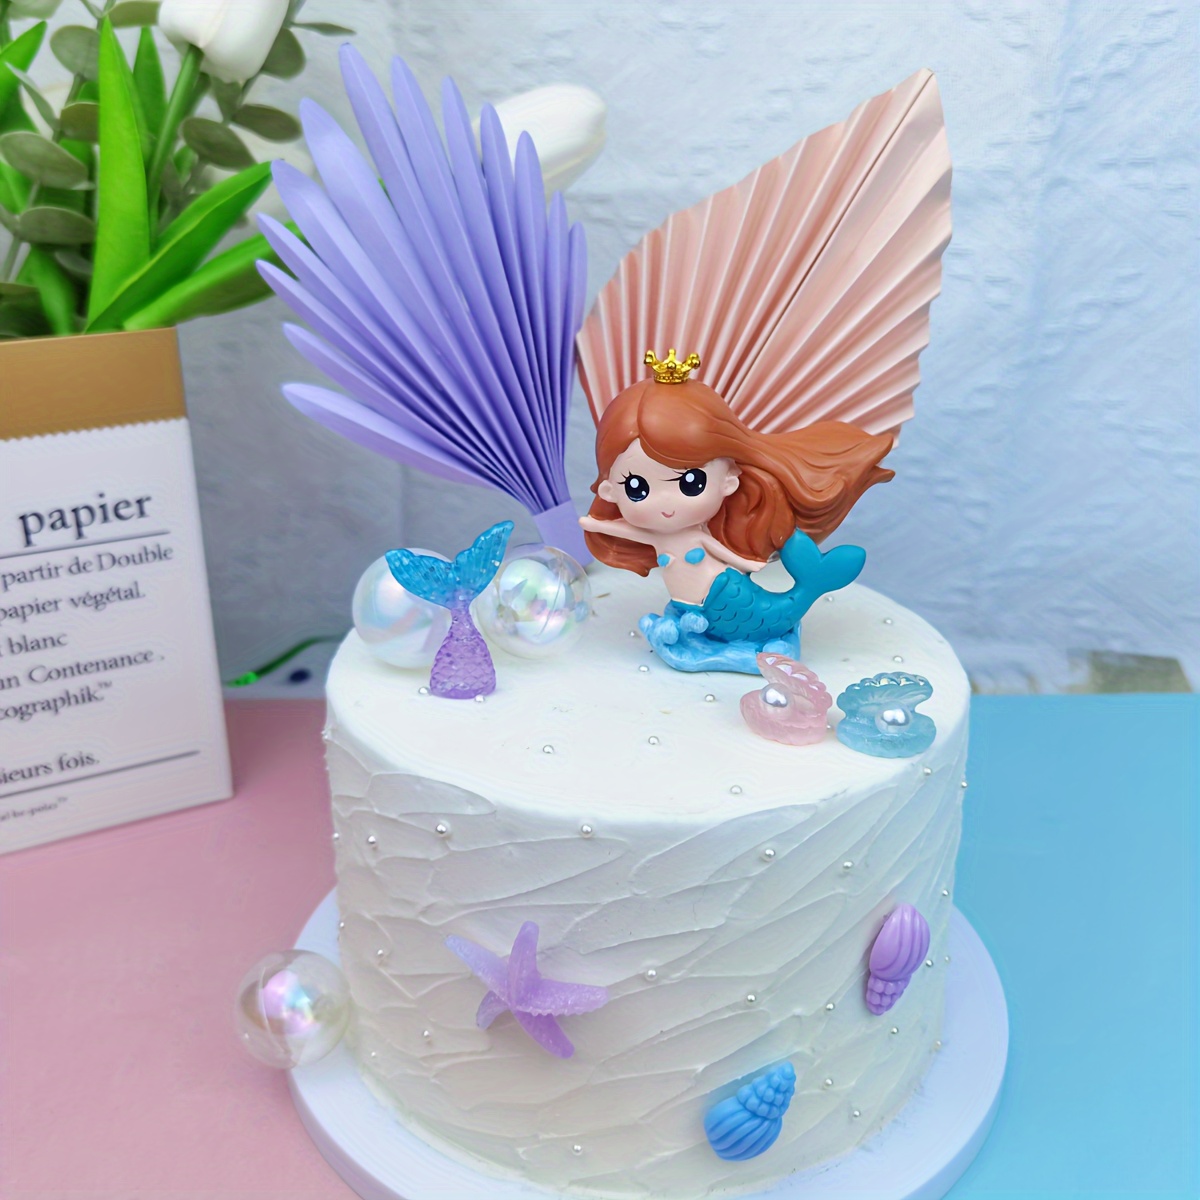 Decoración para pastel de unicornio, hecho a mano, suministros de  decoración para pasteles con múltiples pestañas y cuerno dorado  reutilizable para